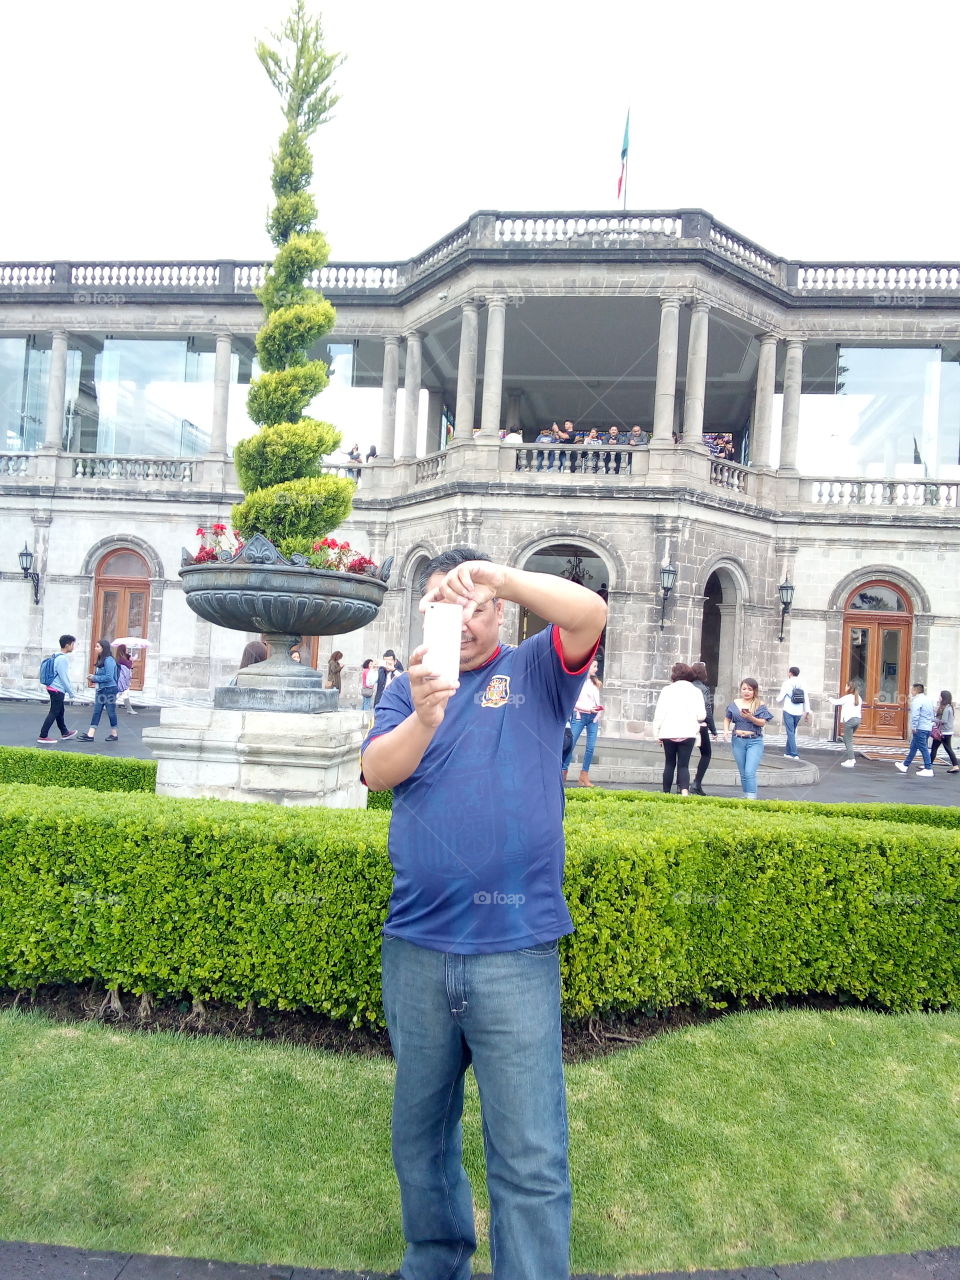 persona tomando fotografía con célular hawei, de fondo parte del castillo de Chapultepec, museo en la cdmx